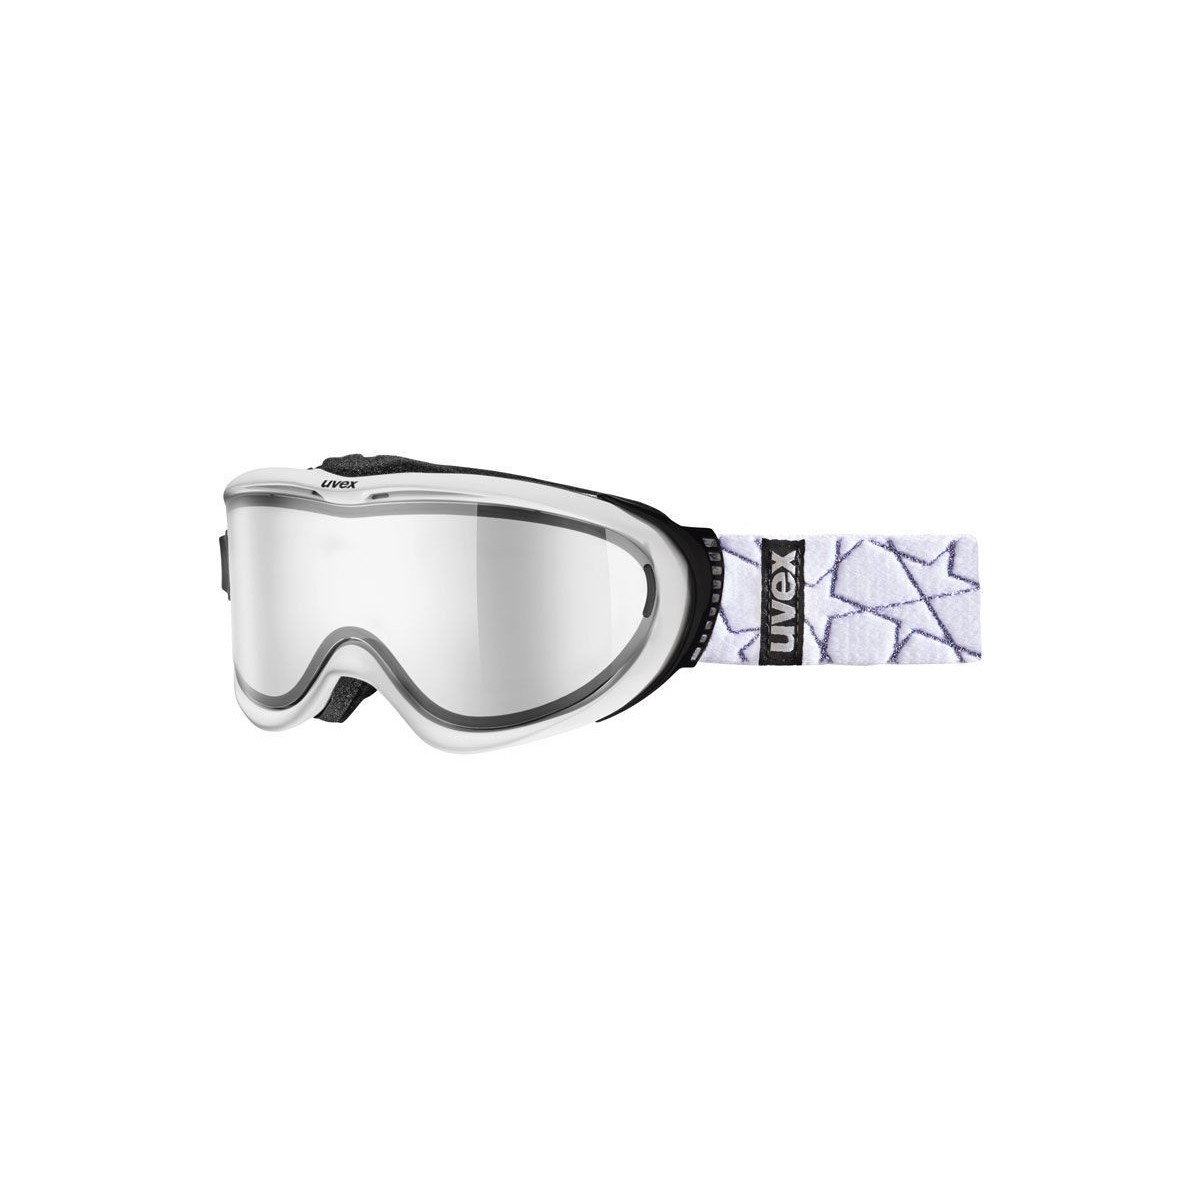 UVEX ski goggles COMANCHE TO white